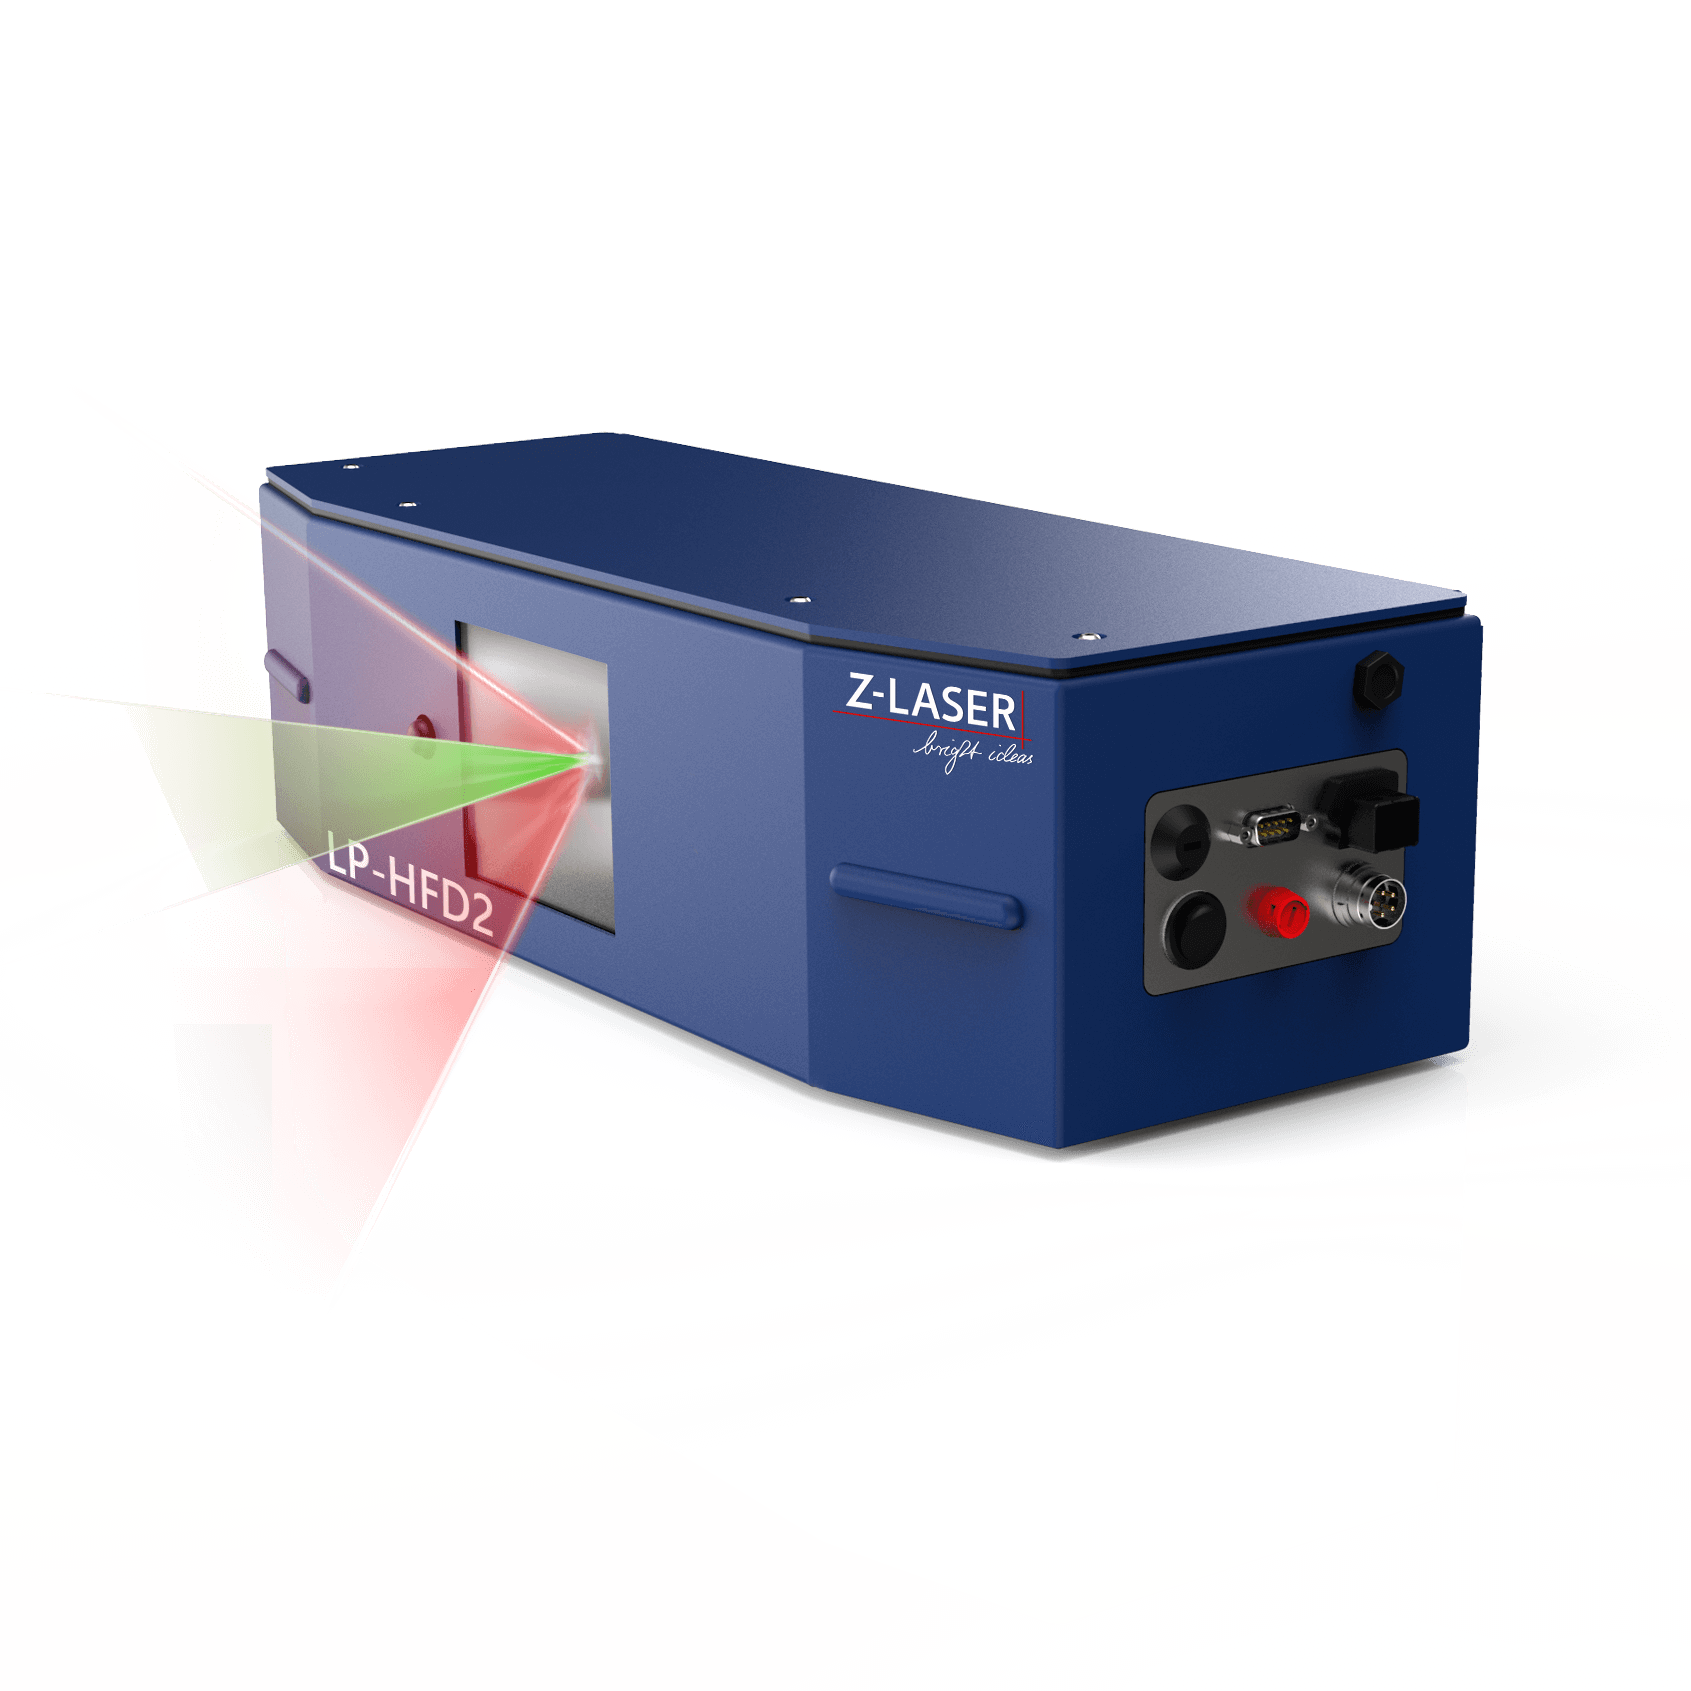 Z-Laser LP-HFD2 Standard | w/ ZFSM Technology